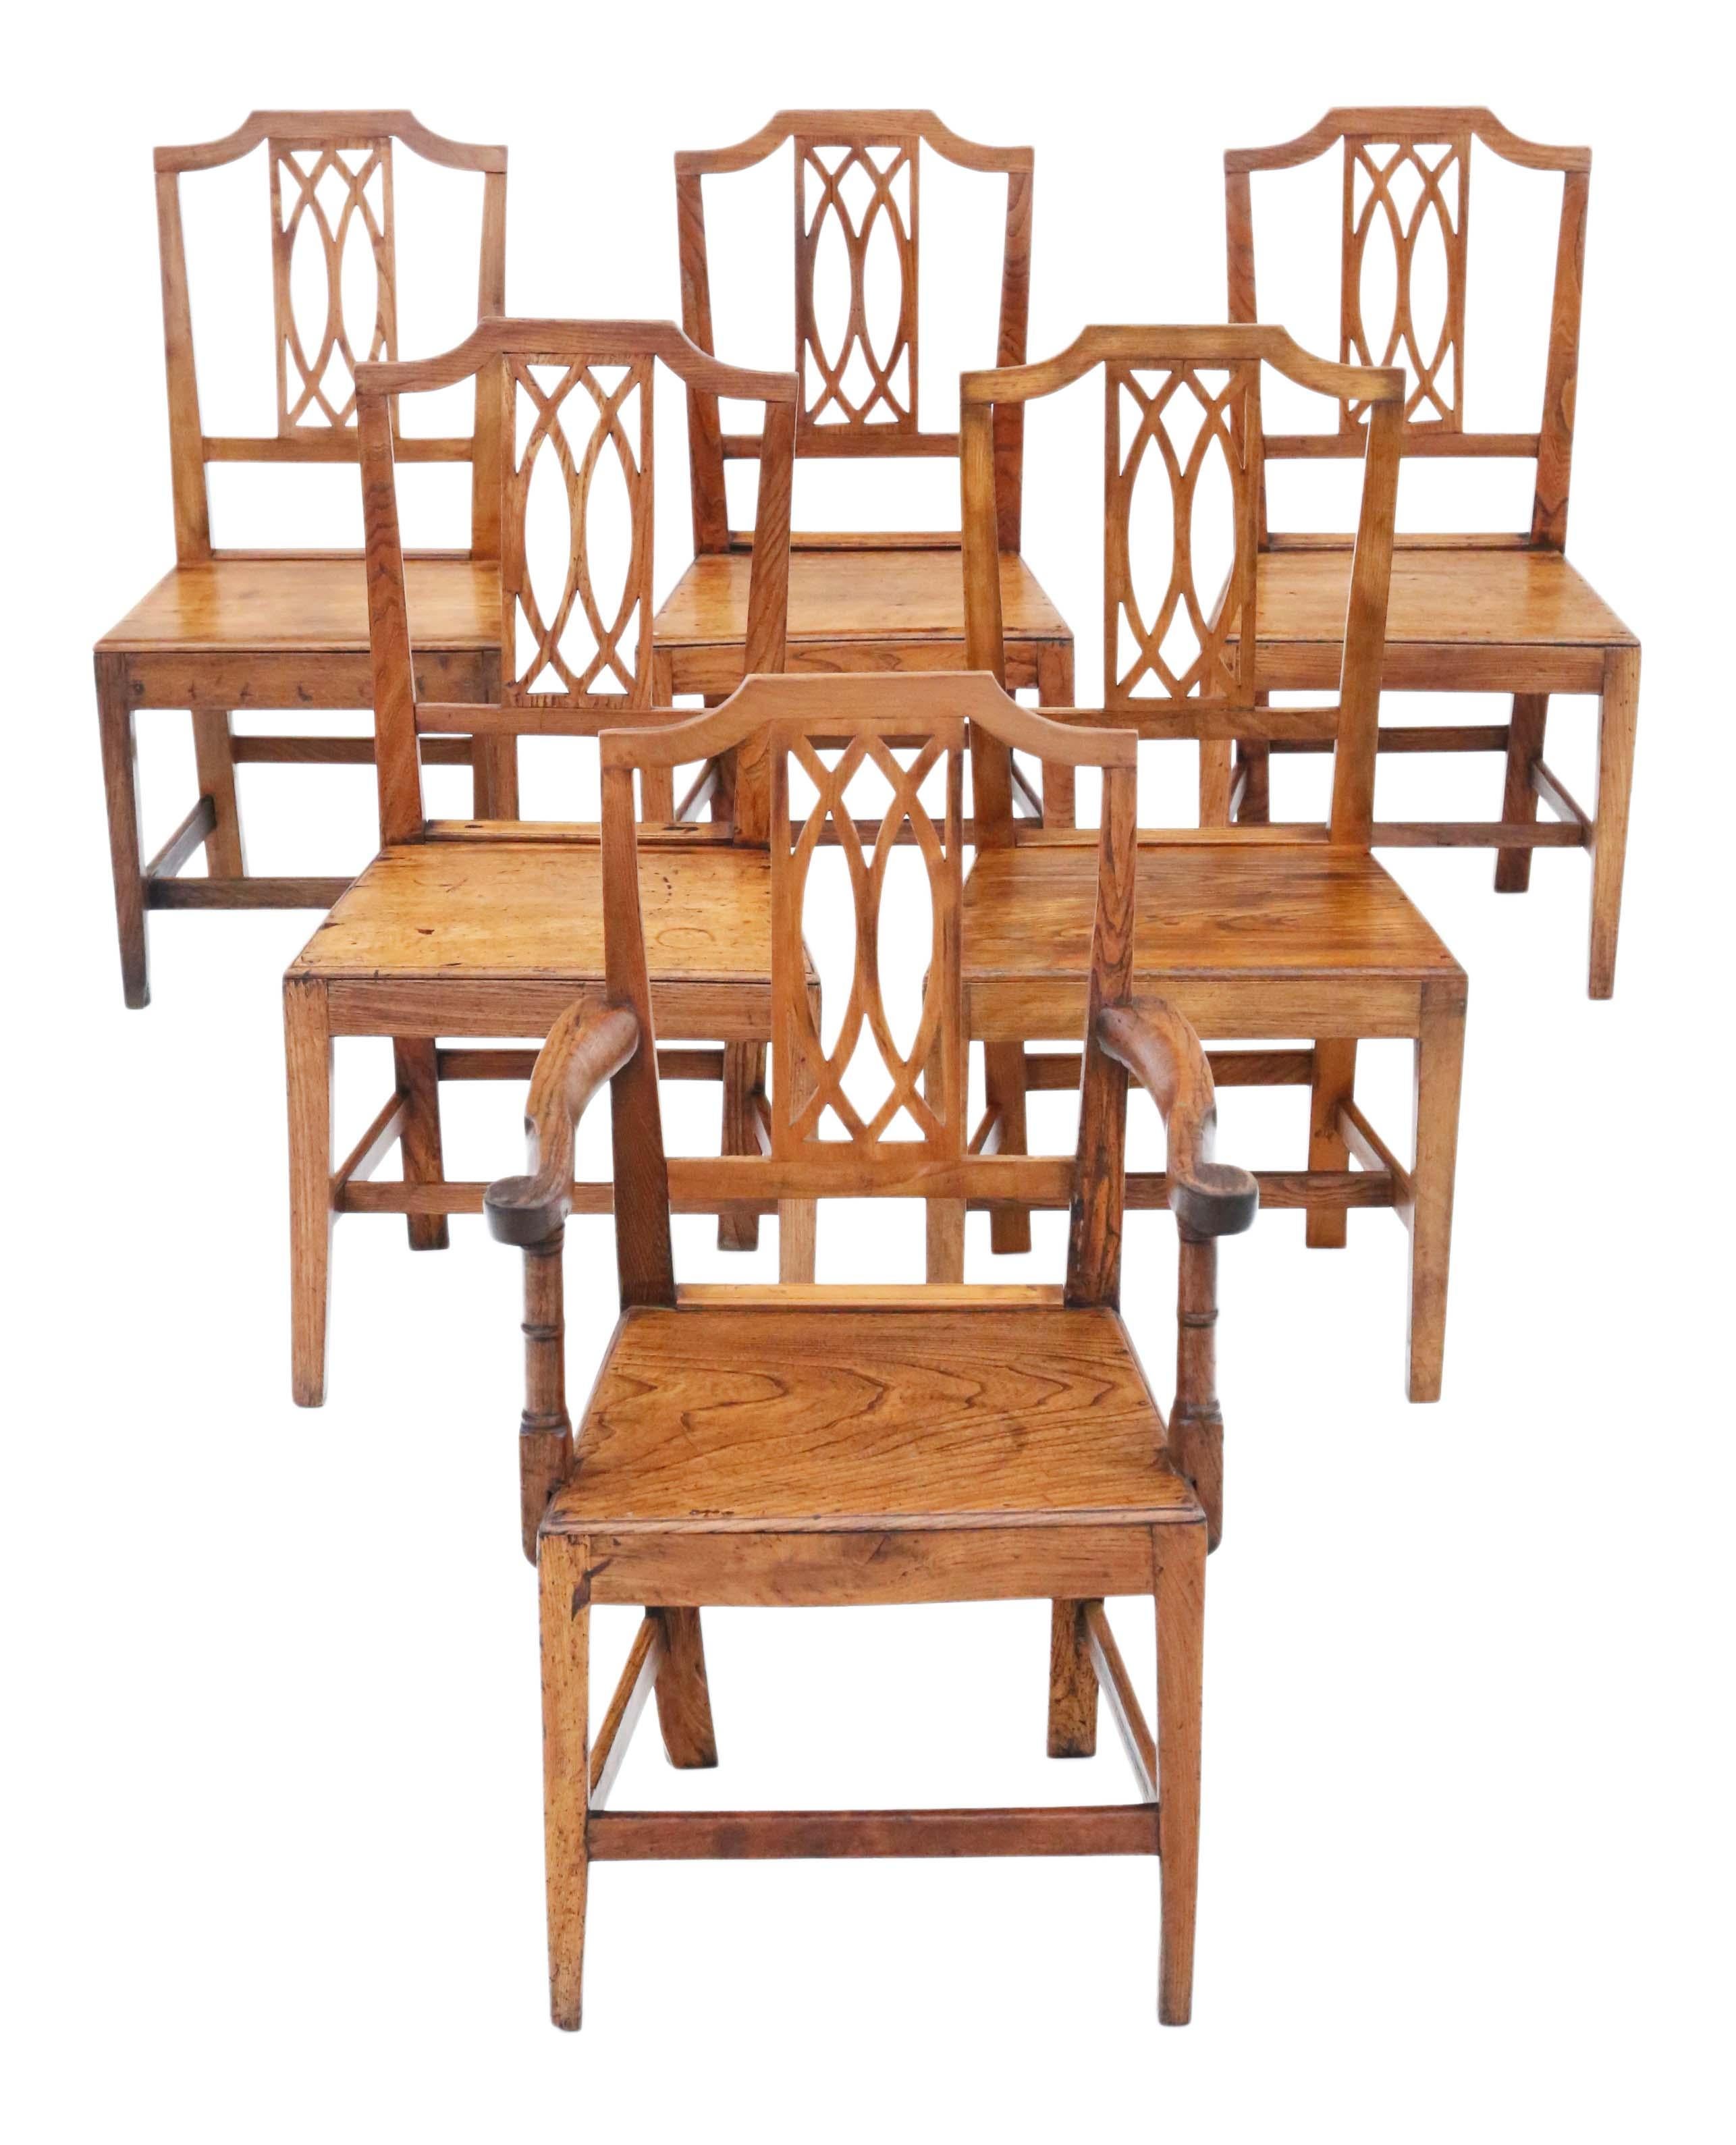 Entdecken Sie die seltene Eleganz dieses antiken Satzes von 6 Stühlen (5 Stühle plus 1 Schnitzer) aus Ulmenholz aus dem 19. Jahrhundert, der ein wirklich einzigartiges Design aufweist. Diese Stühle sind ein Beweis für hochwertige Handwerkskunst, mit